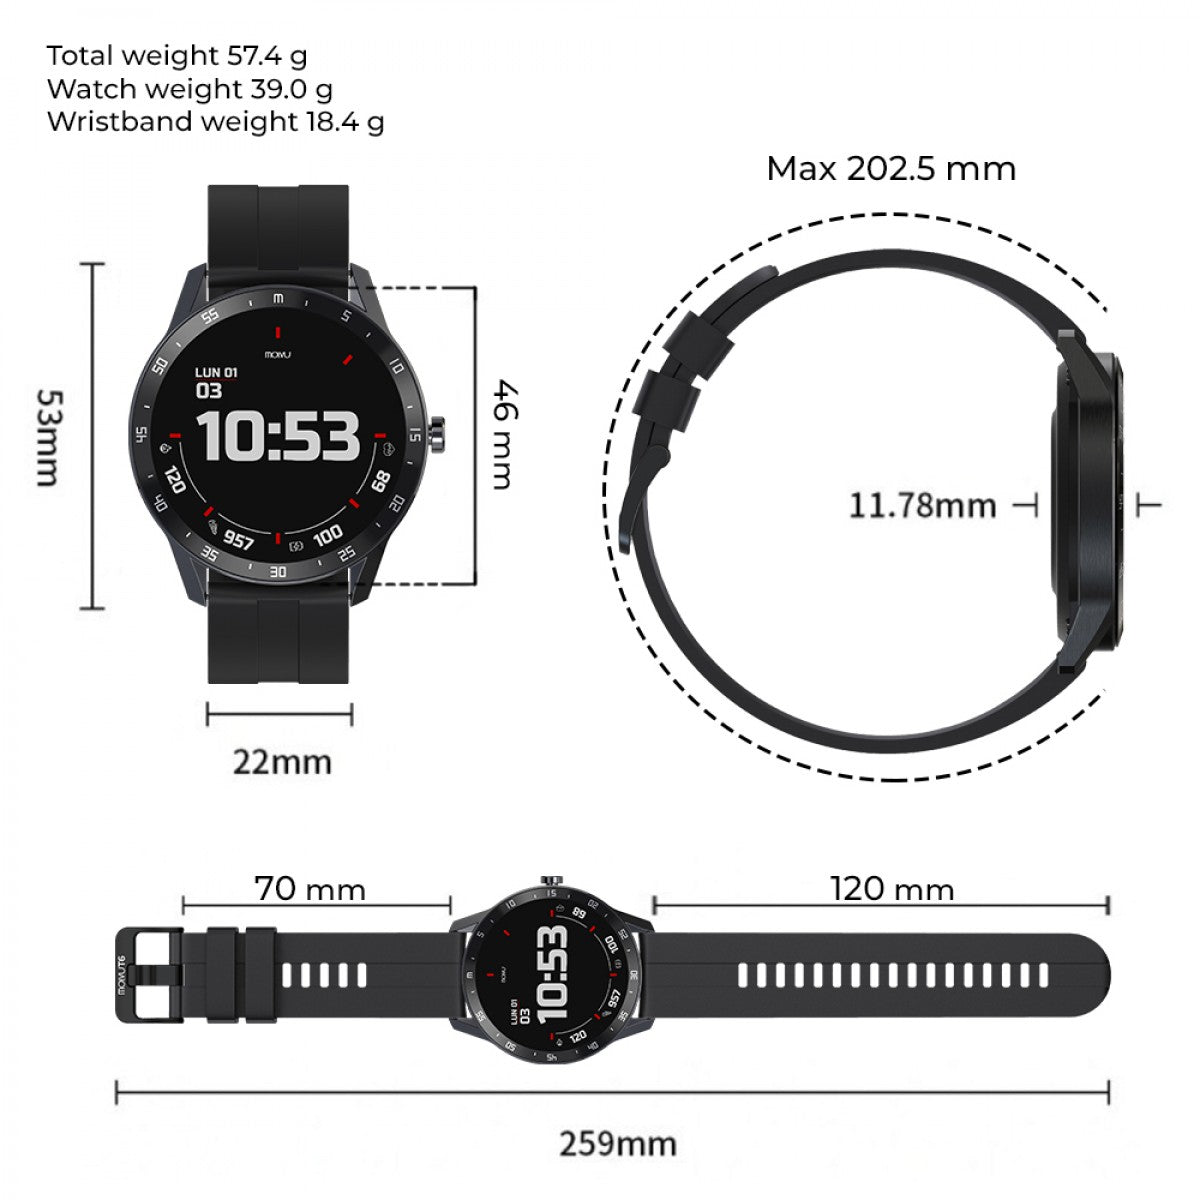 Reloj Inteligente T6 Negro - Molvu